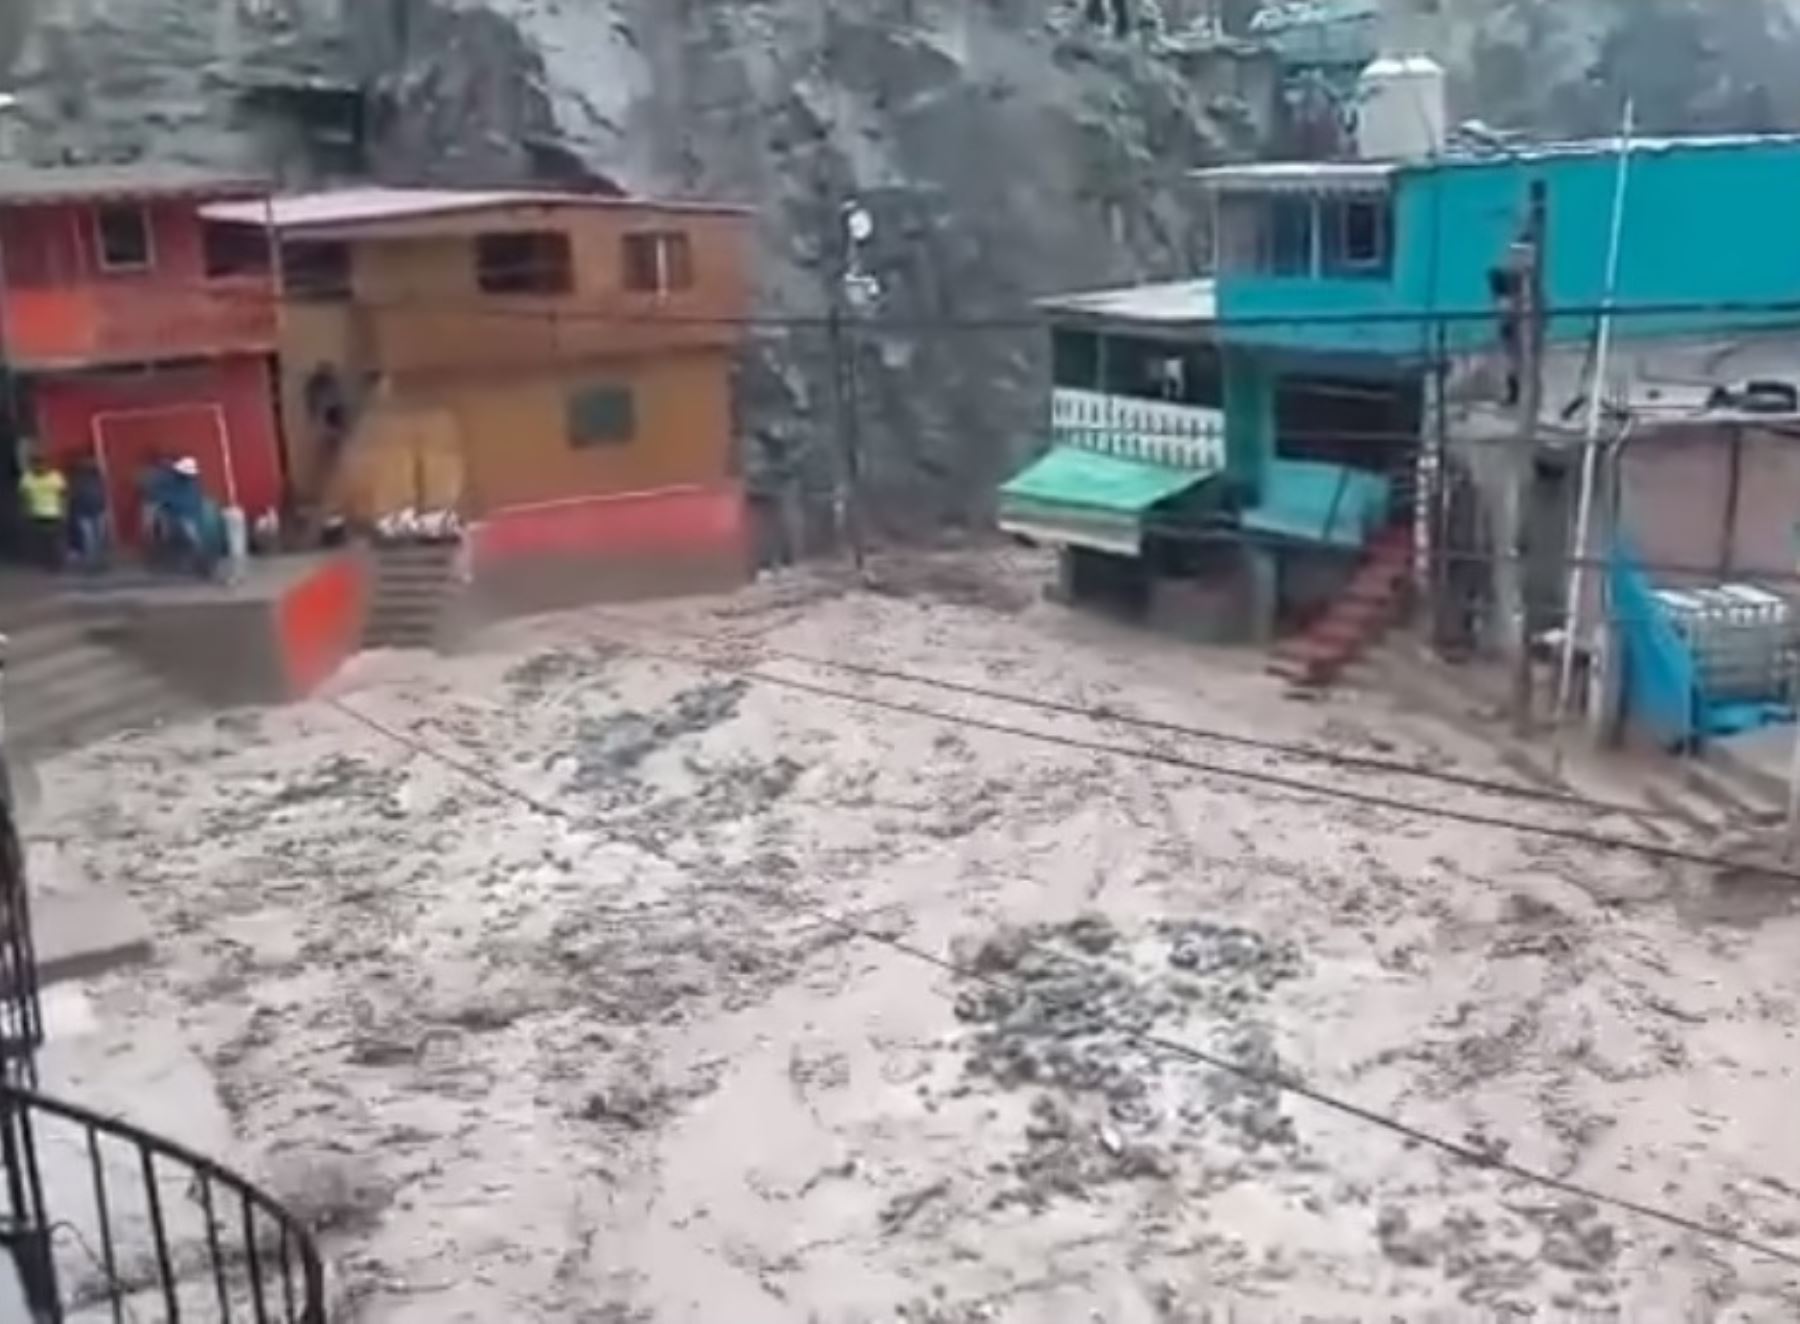 El COER Arequipa informó que aumentó a 14 el número de personas fallecidas a consecuencia de las lluvias y huaico en Camaná. Foto: Captura TV